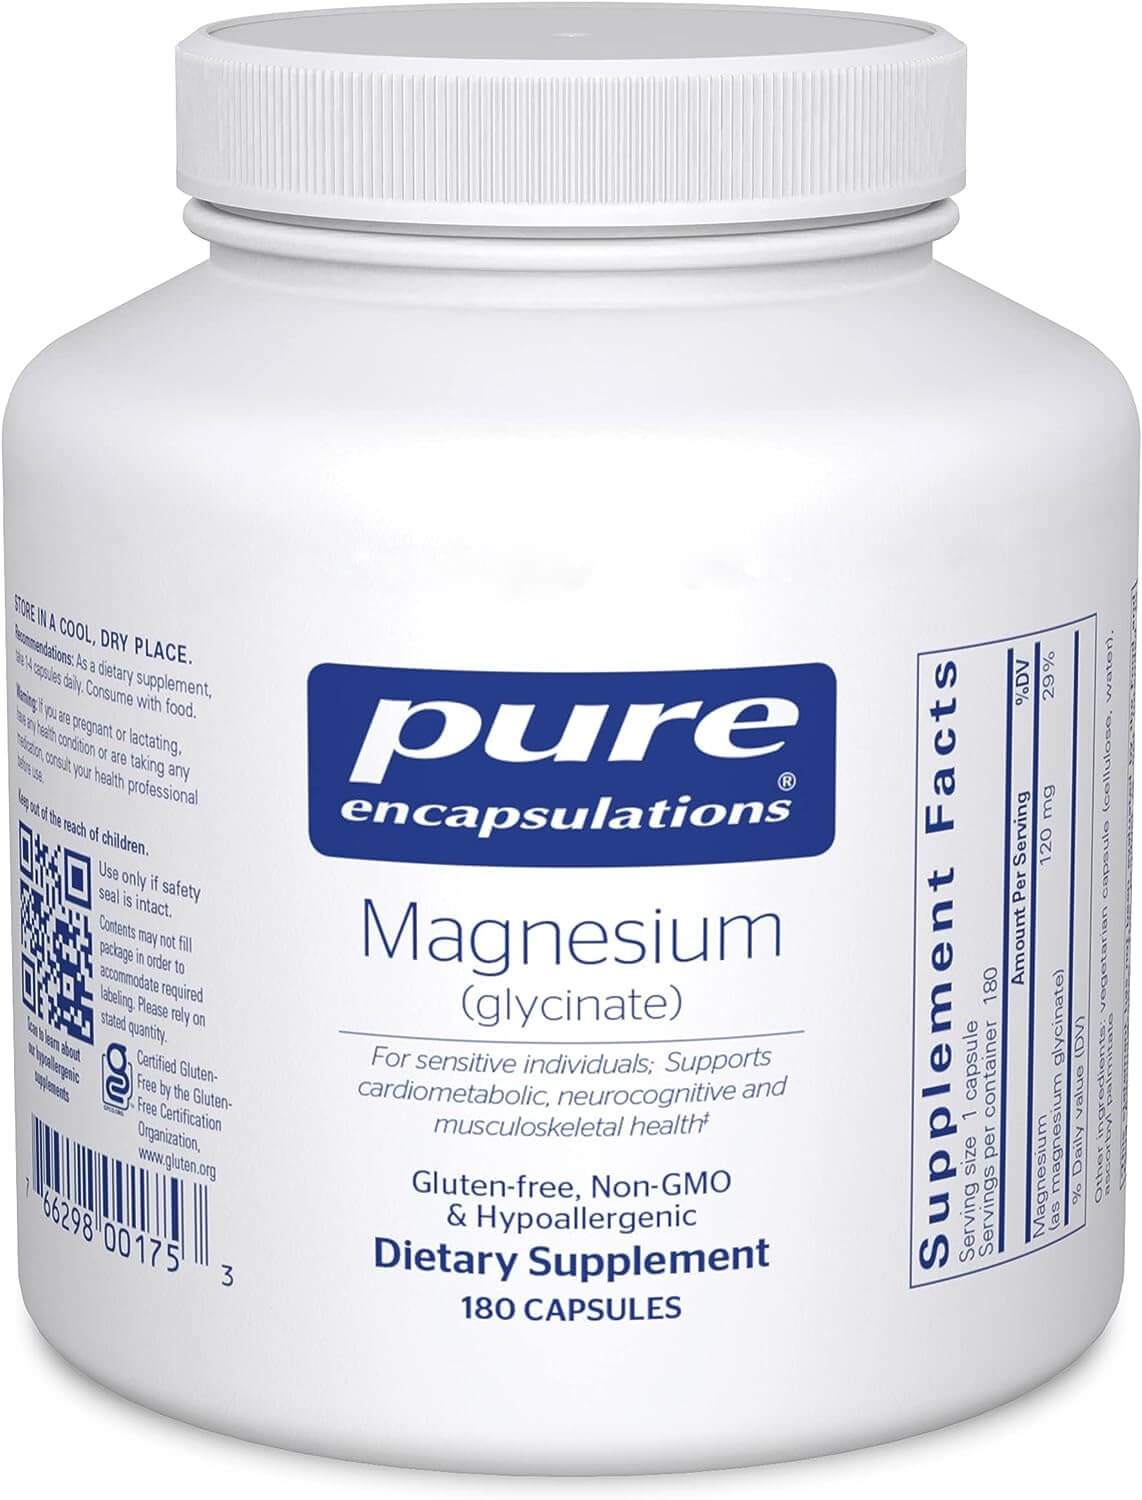 Pure Encapsulations Magnesium Glycinate 